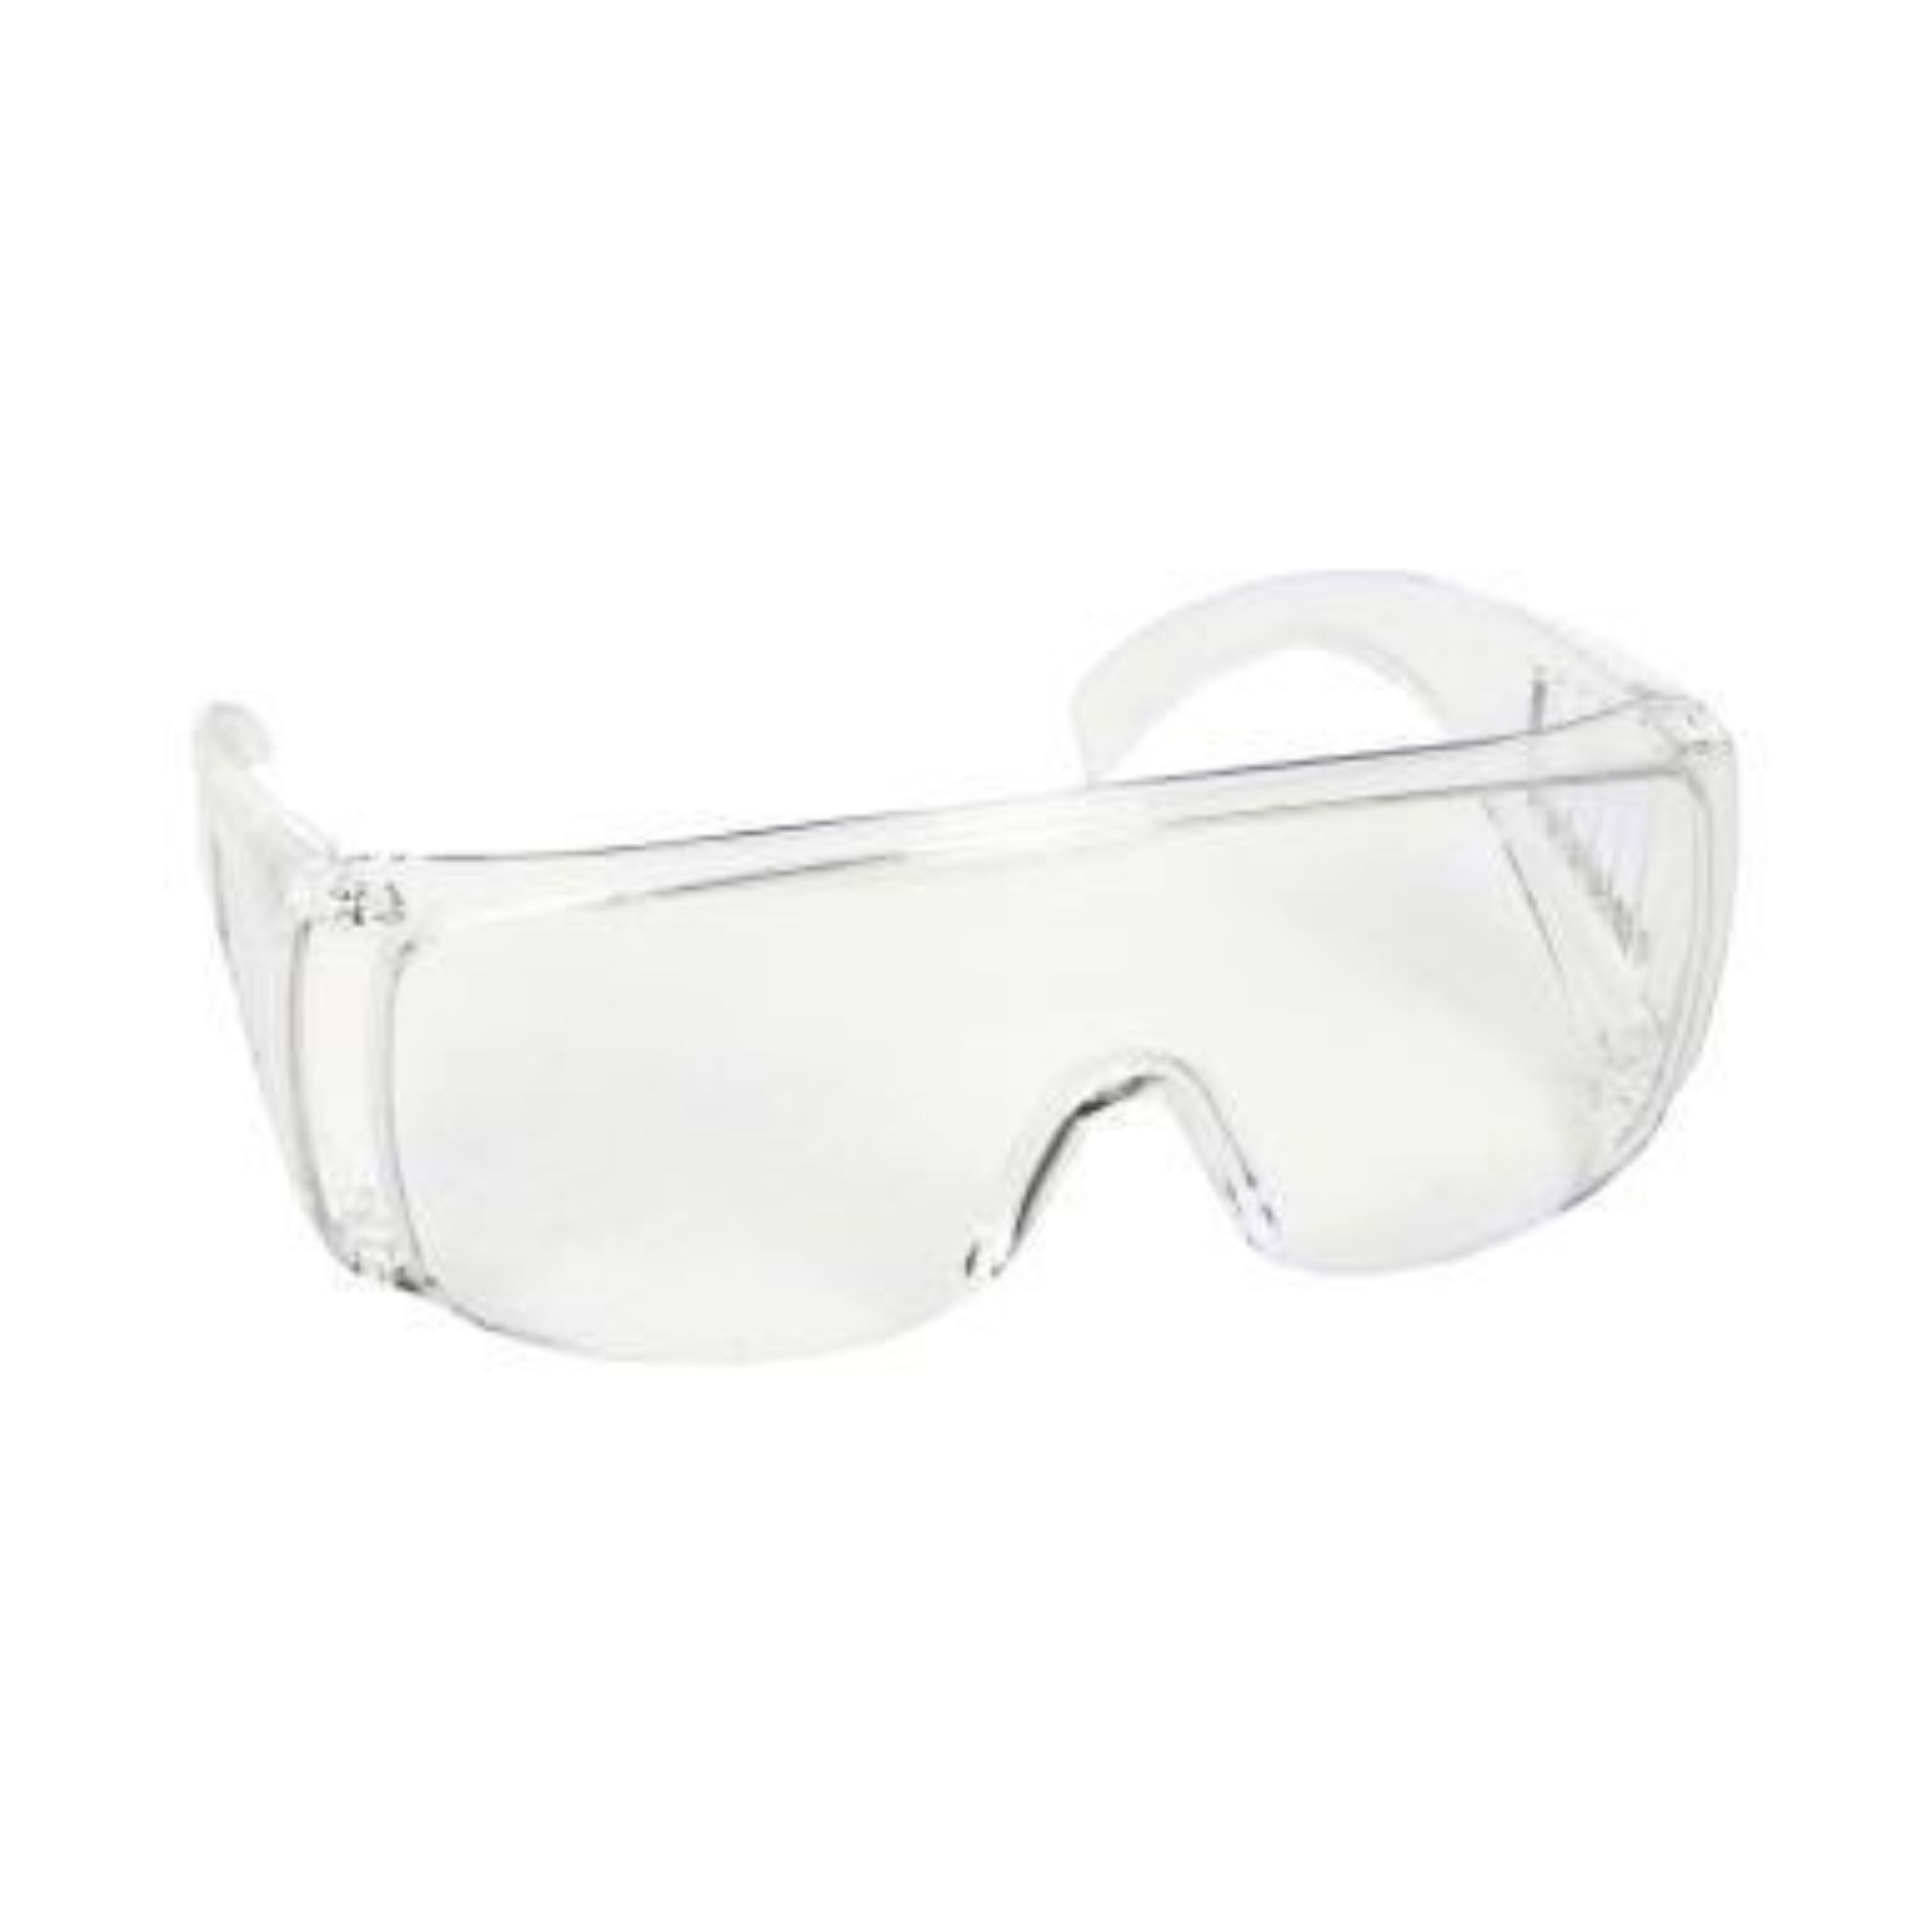 Oculos de proteção modelo TYPICAL